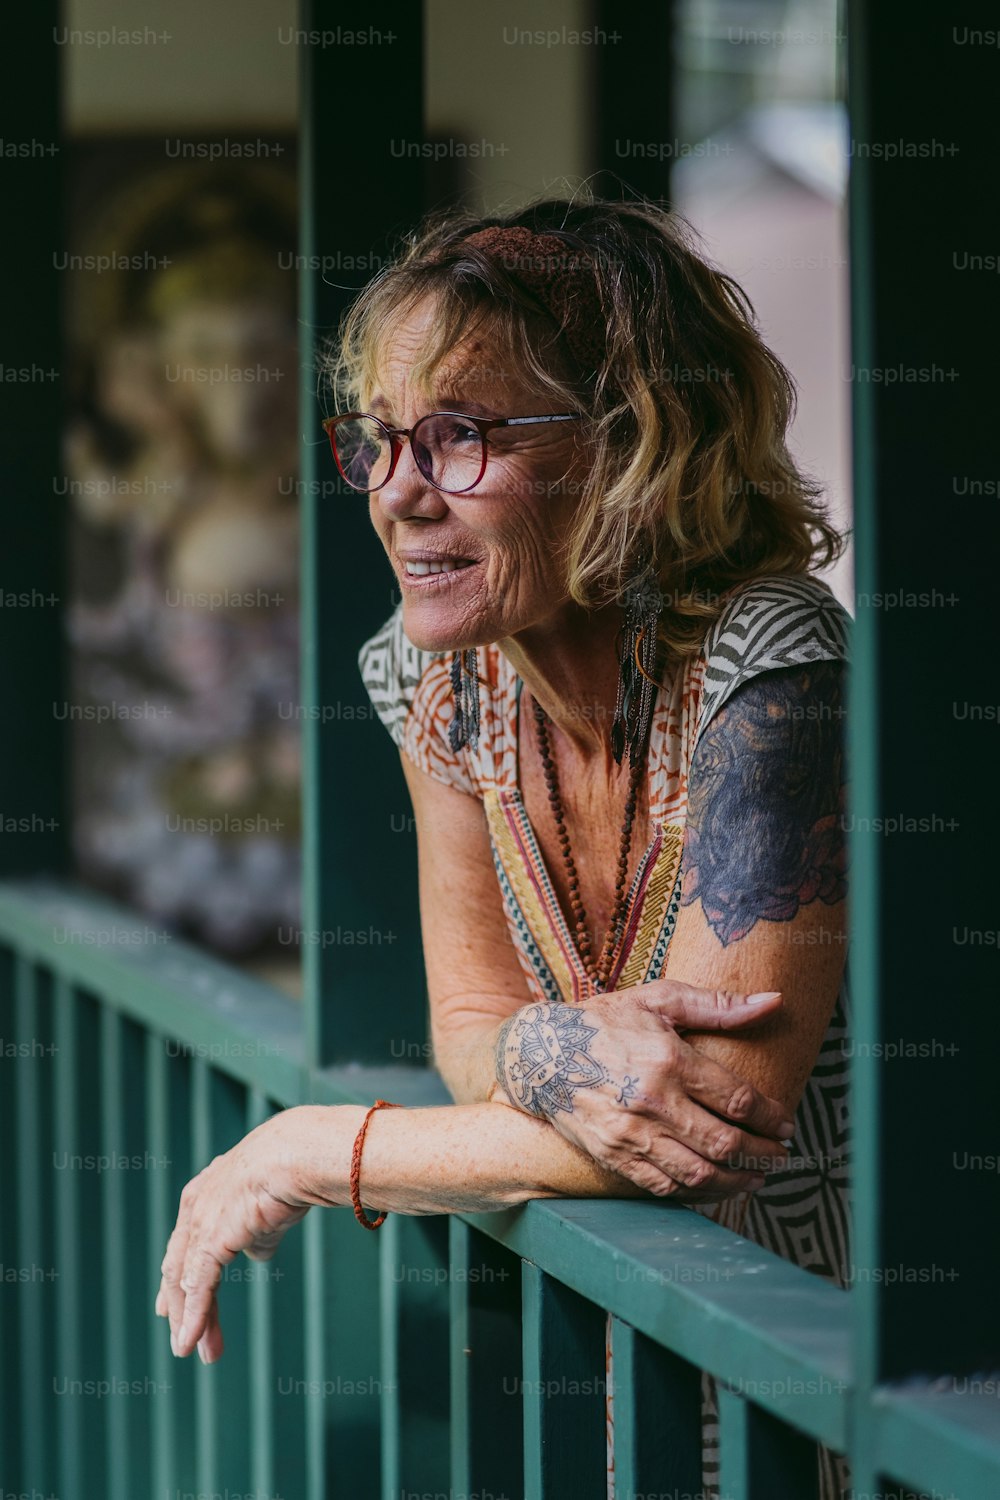 Una mujer con tatuajes en el brazo apoyada en una barandilla